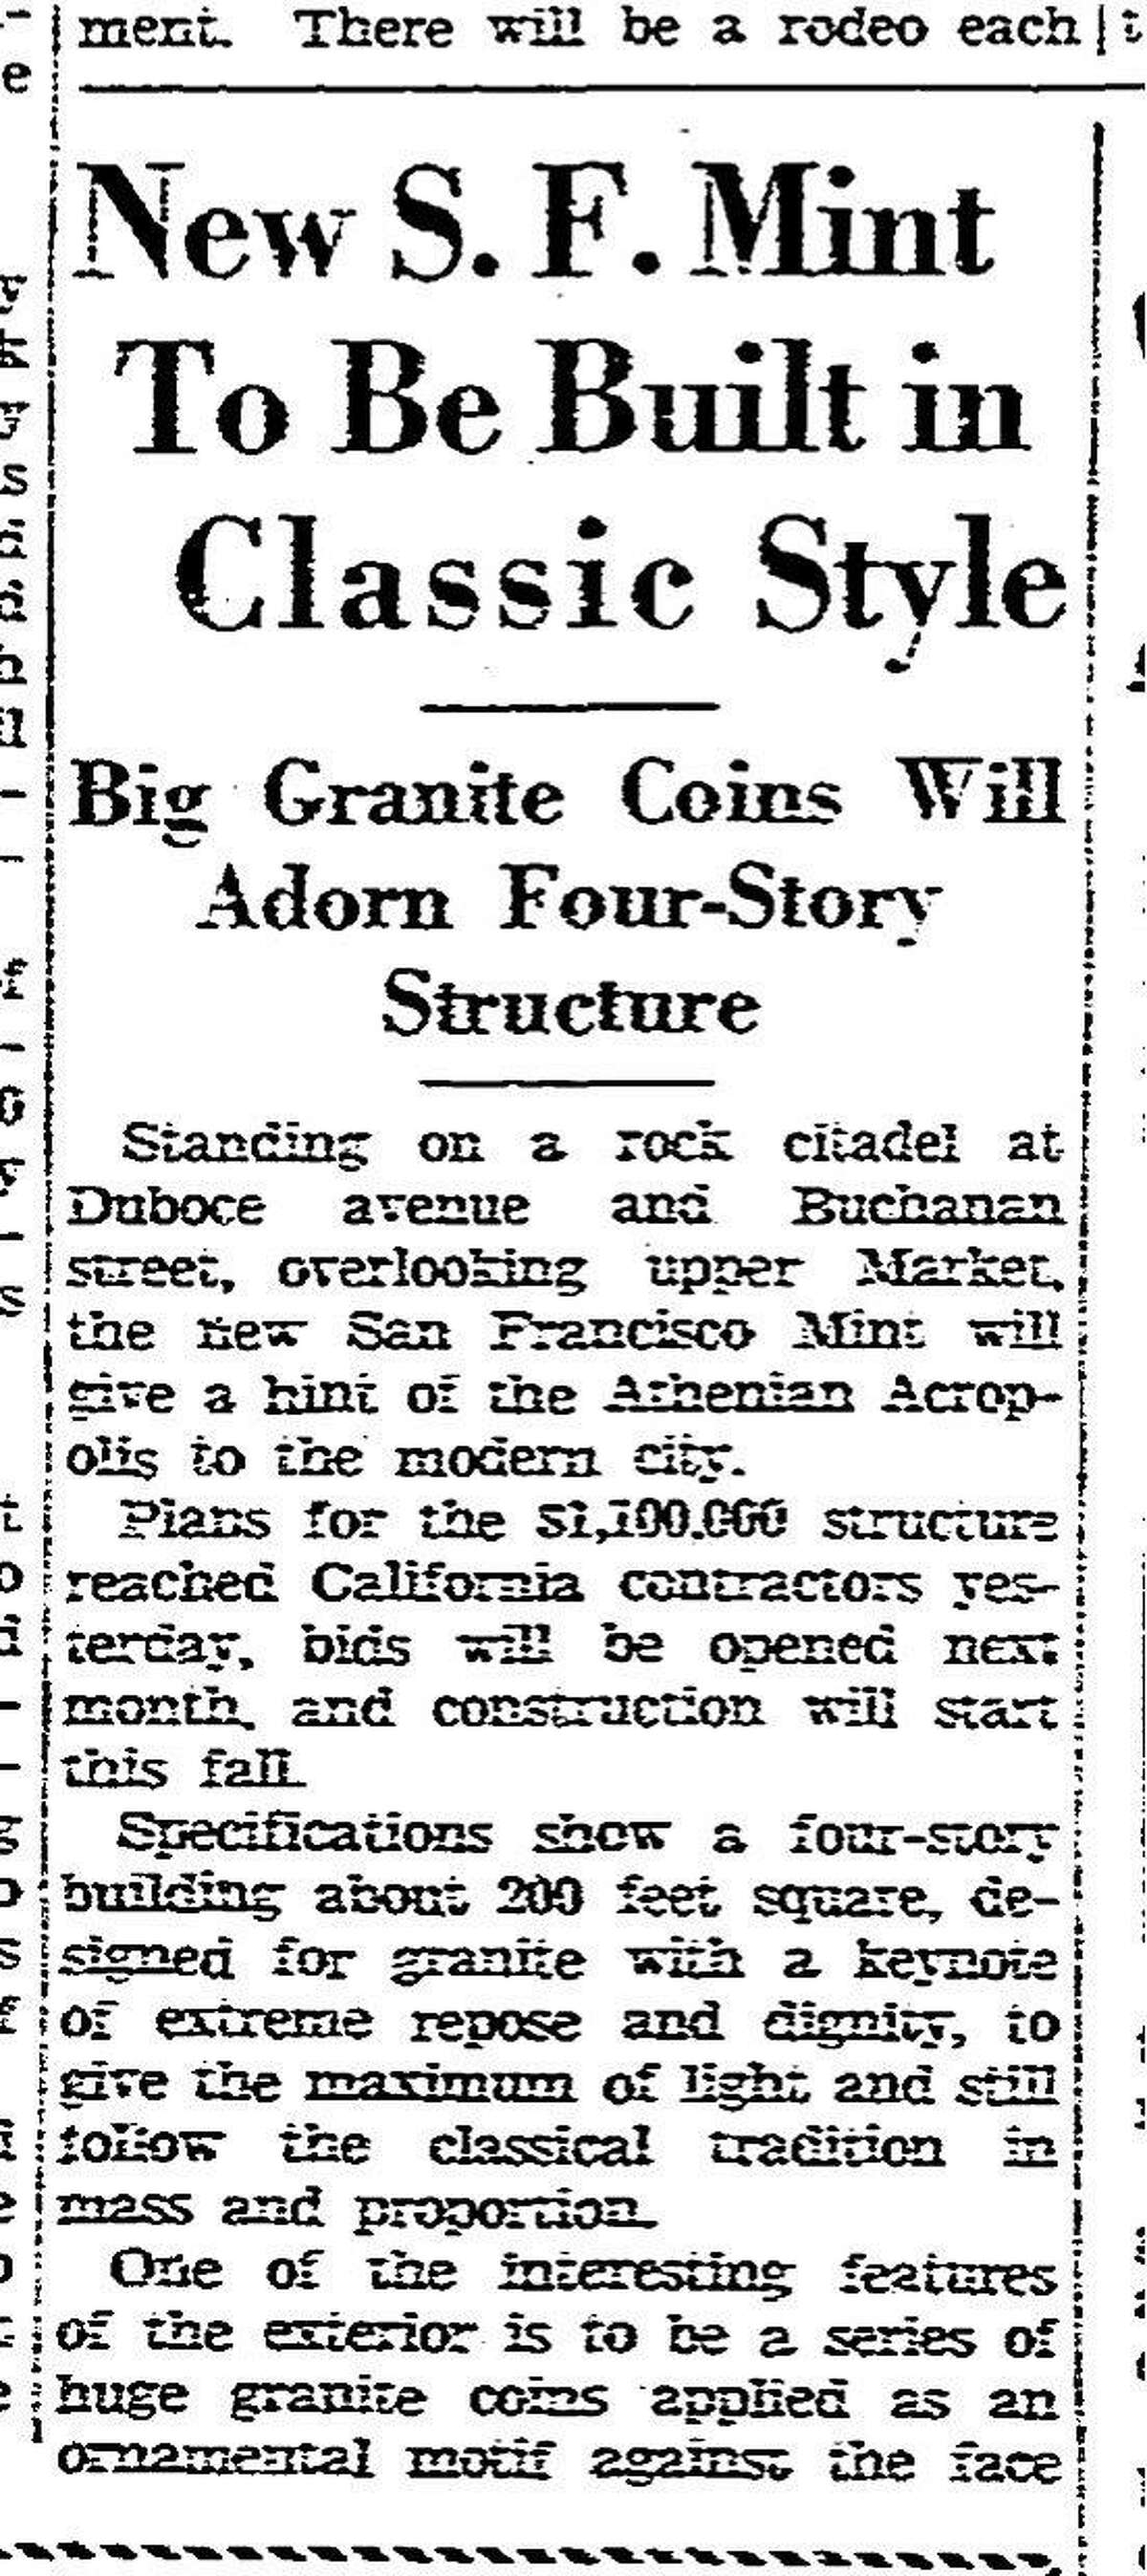 据《纪事报》报道，新的美国造币厂将于1935年6月27日建在旧金山市场街附近的布坎南和杜布埃街角